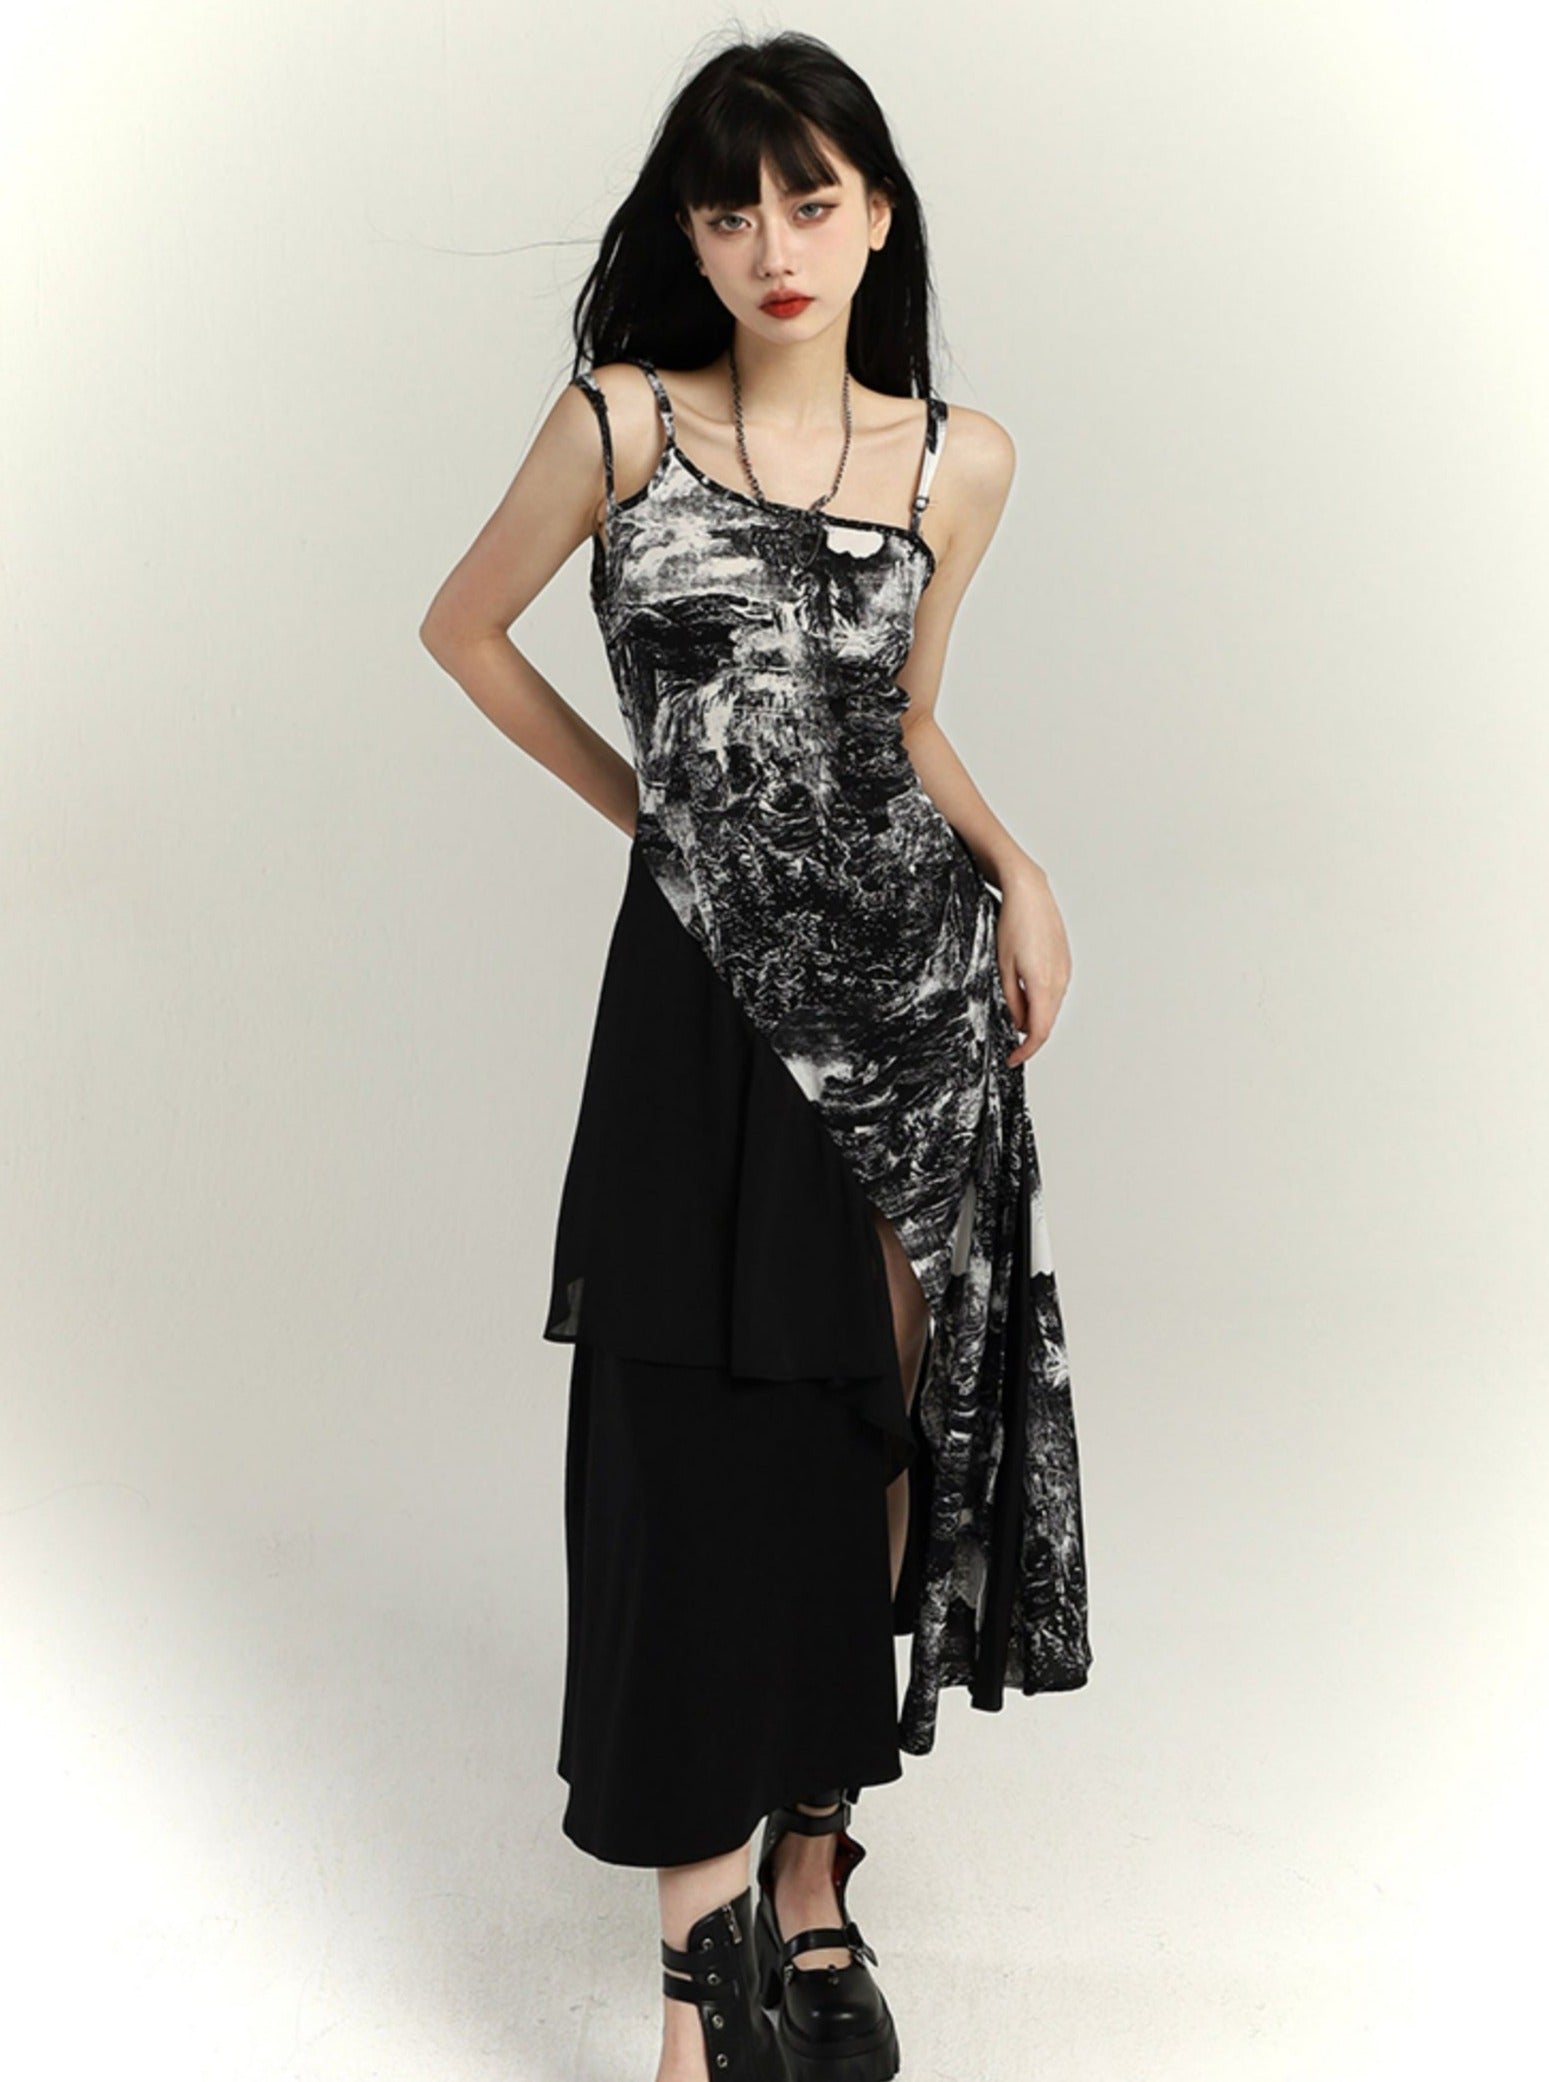 Chinese Suspender Dress - chiclara